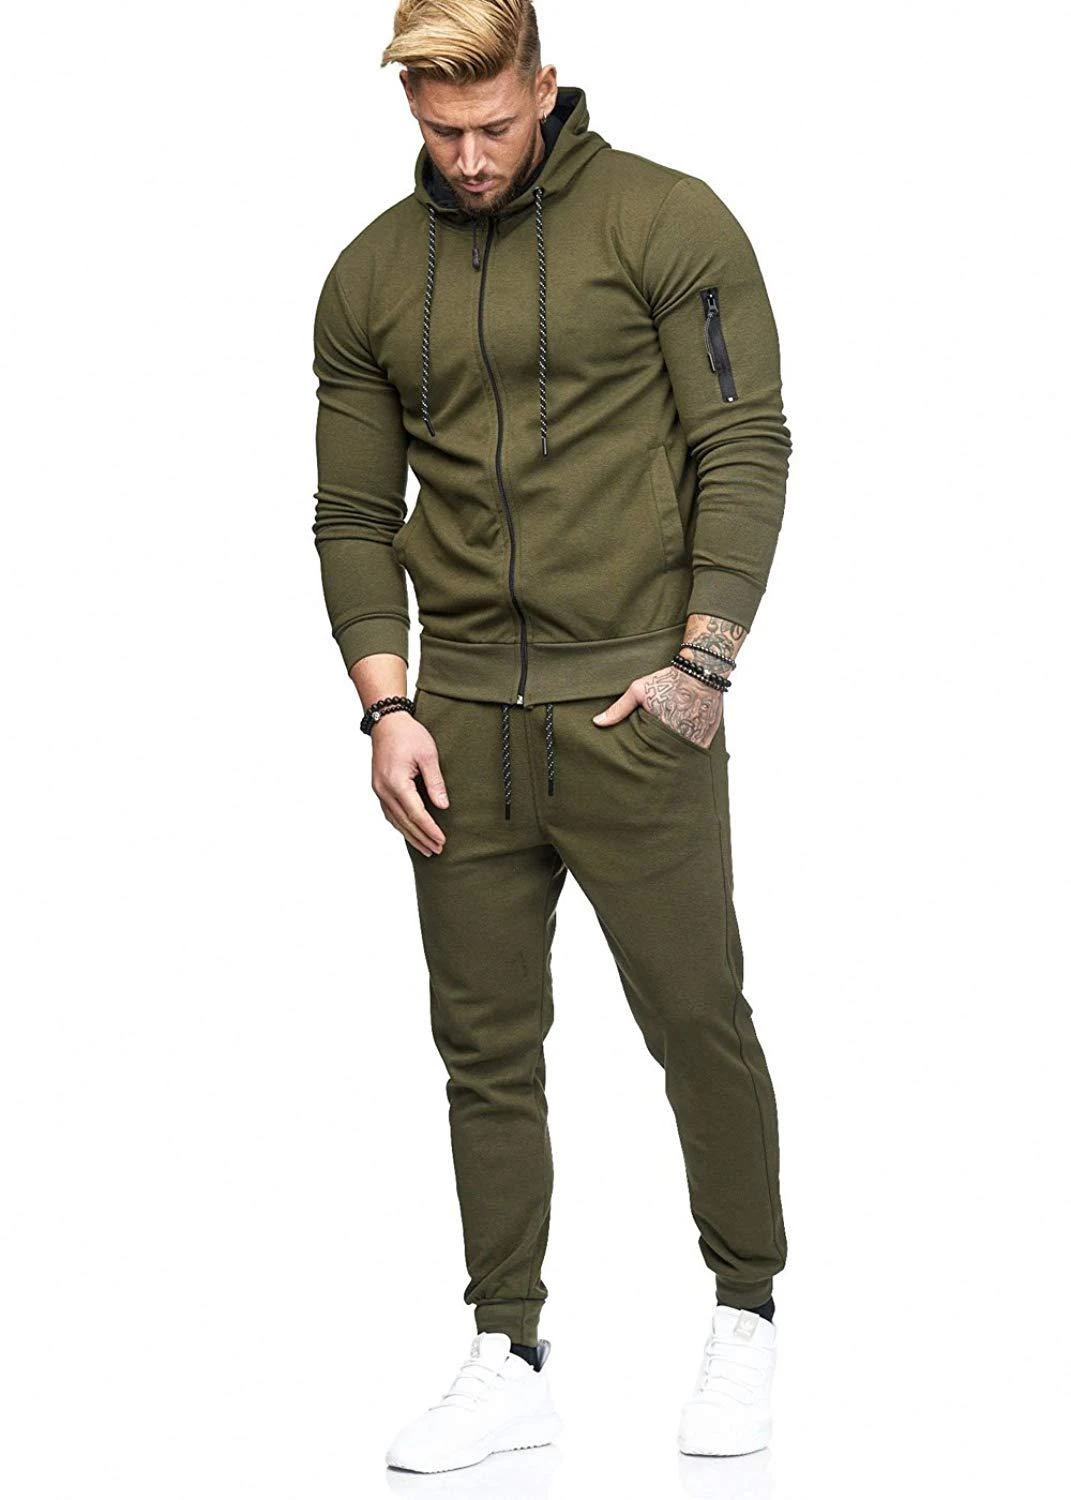 Conjuntos de ropa deportiva de moda para hombre conjunto de pantalones sudaderas con capucha para hombre|Conjuntos para hombres| - AliExpress